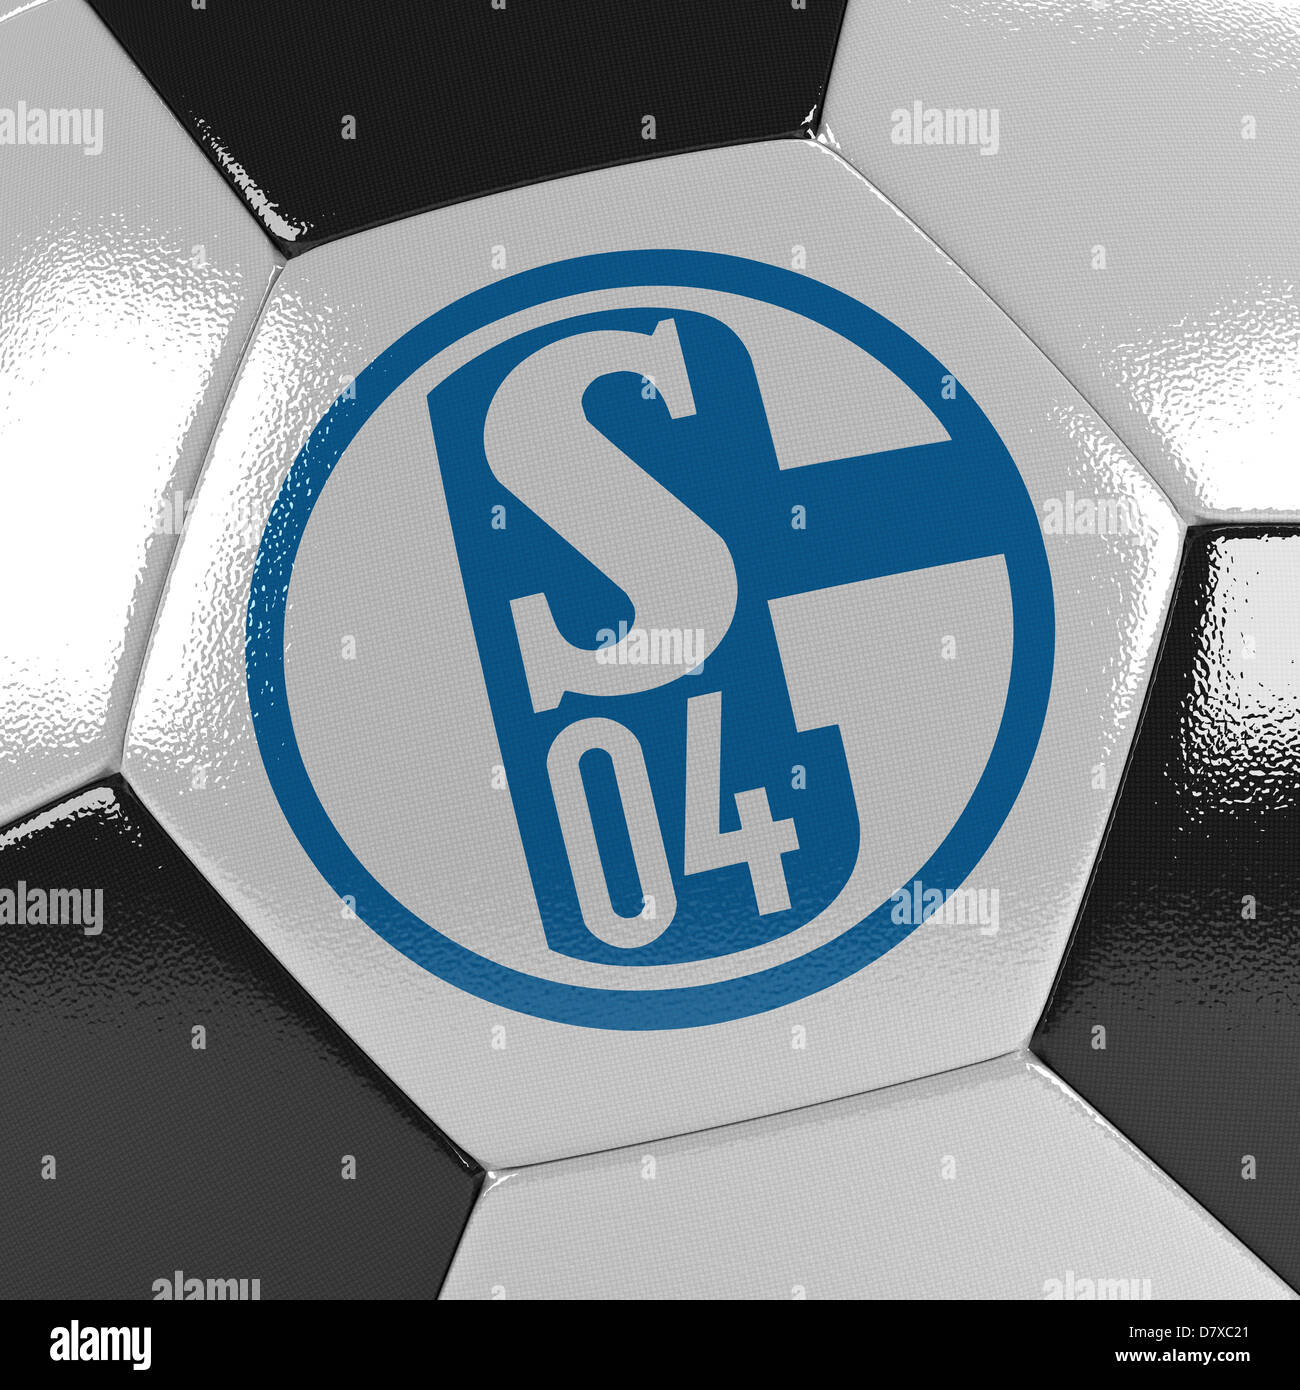 FC Schalke 04 soccer ball Stock Photo